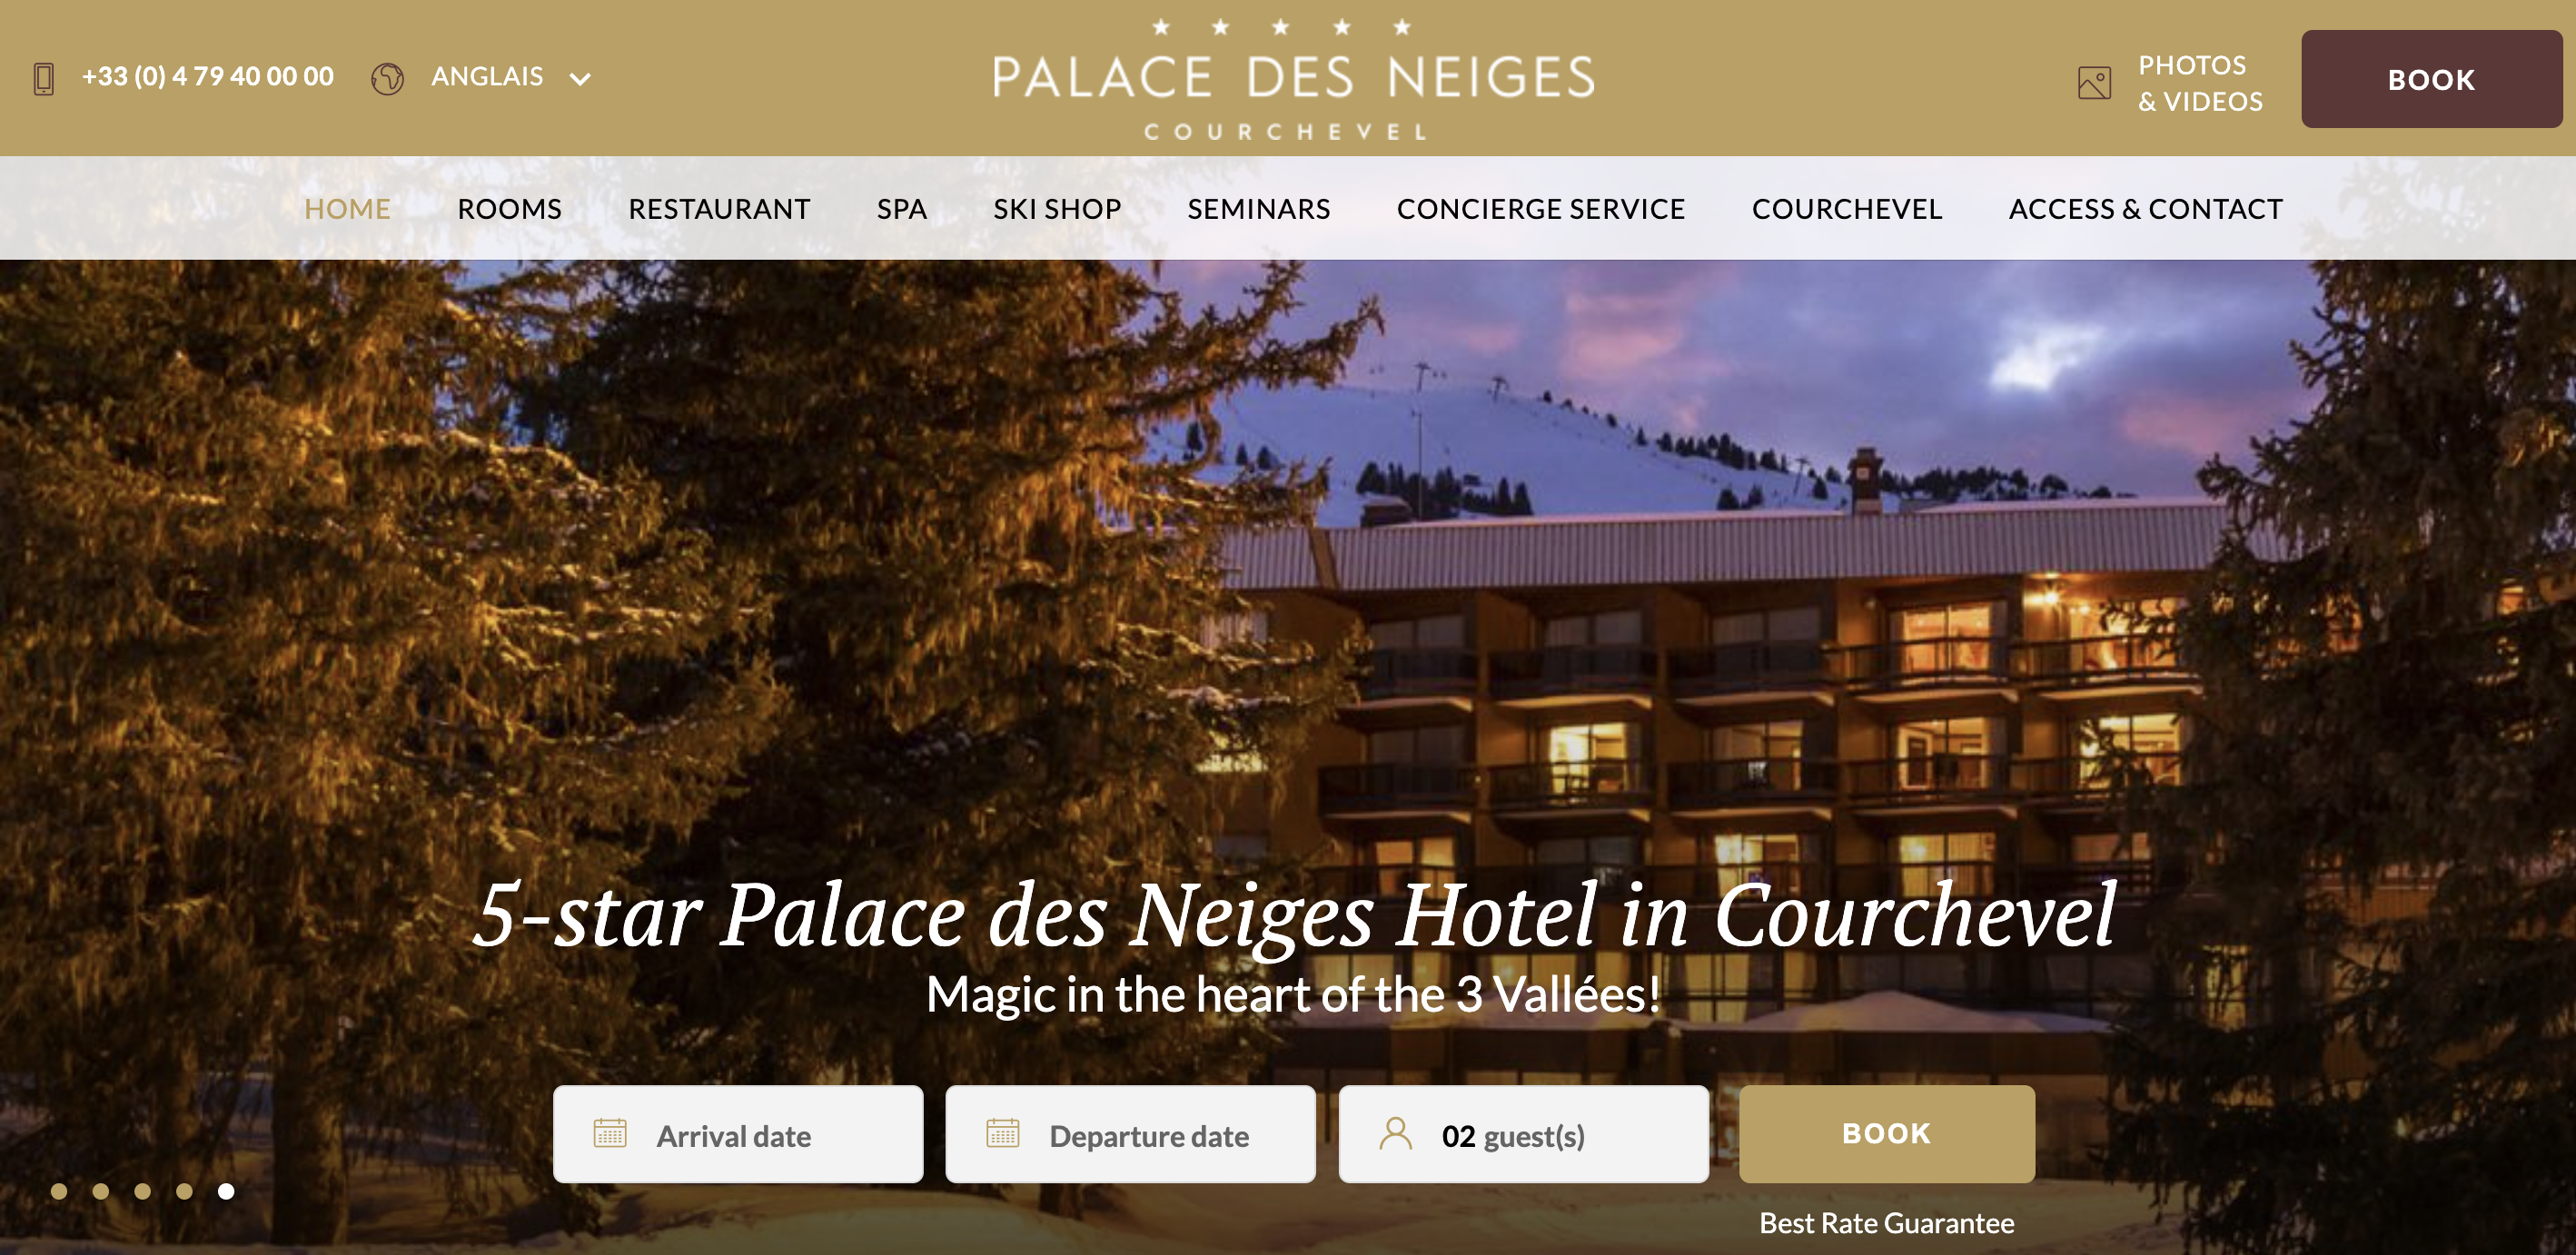 摩纳哥王室旗下酒店集团收购173年历史的阿尔卑斯山滑雪度假酒店 Palace des Neiges